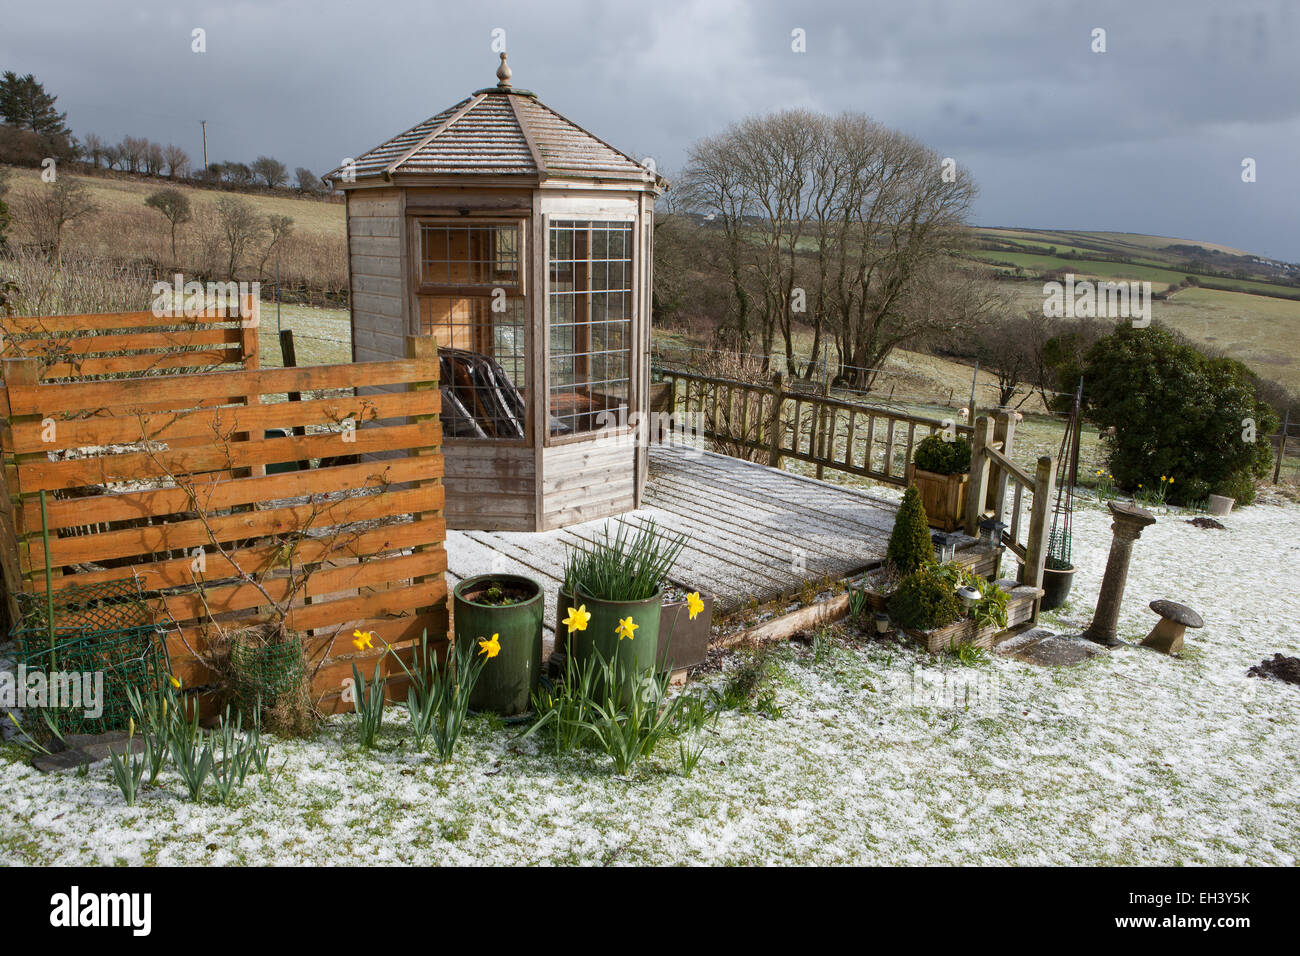 Ungewöhnliche Wetter für März in Cornwall, deckt ein Rückgang von Schnee, der Rasen und der Belag rund um das Gartenhaus. Stockfoto